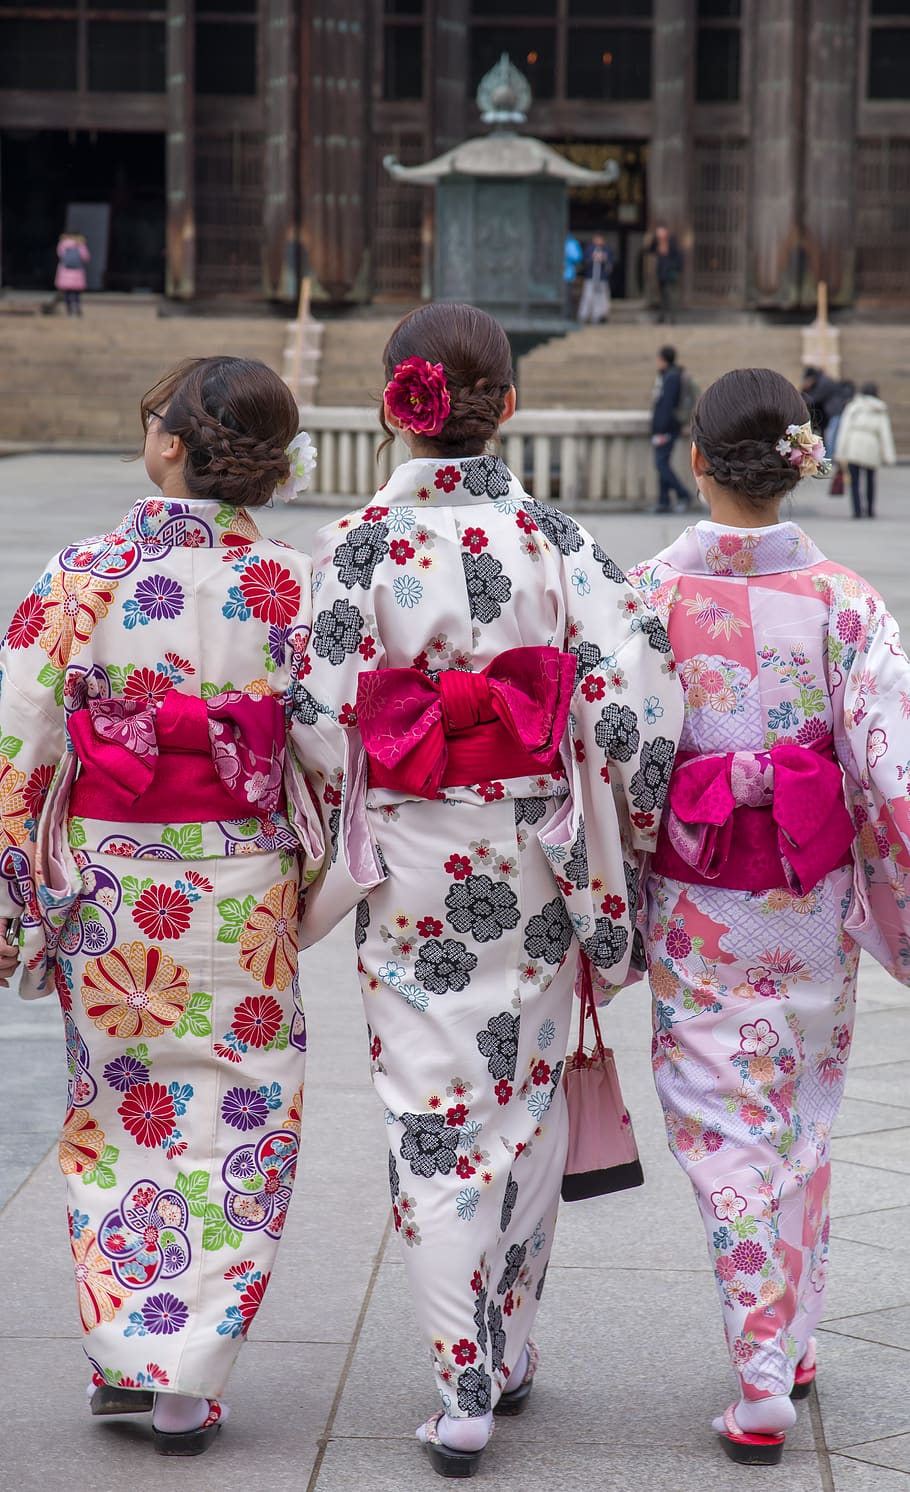 jepang, nara, kimono, kuil, tradisi, tampilan belakang, orang-orang nyata, sekelompok orang, arsitektur, kota